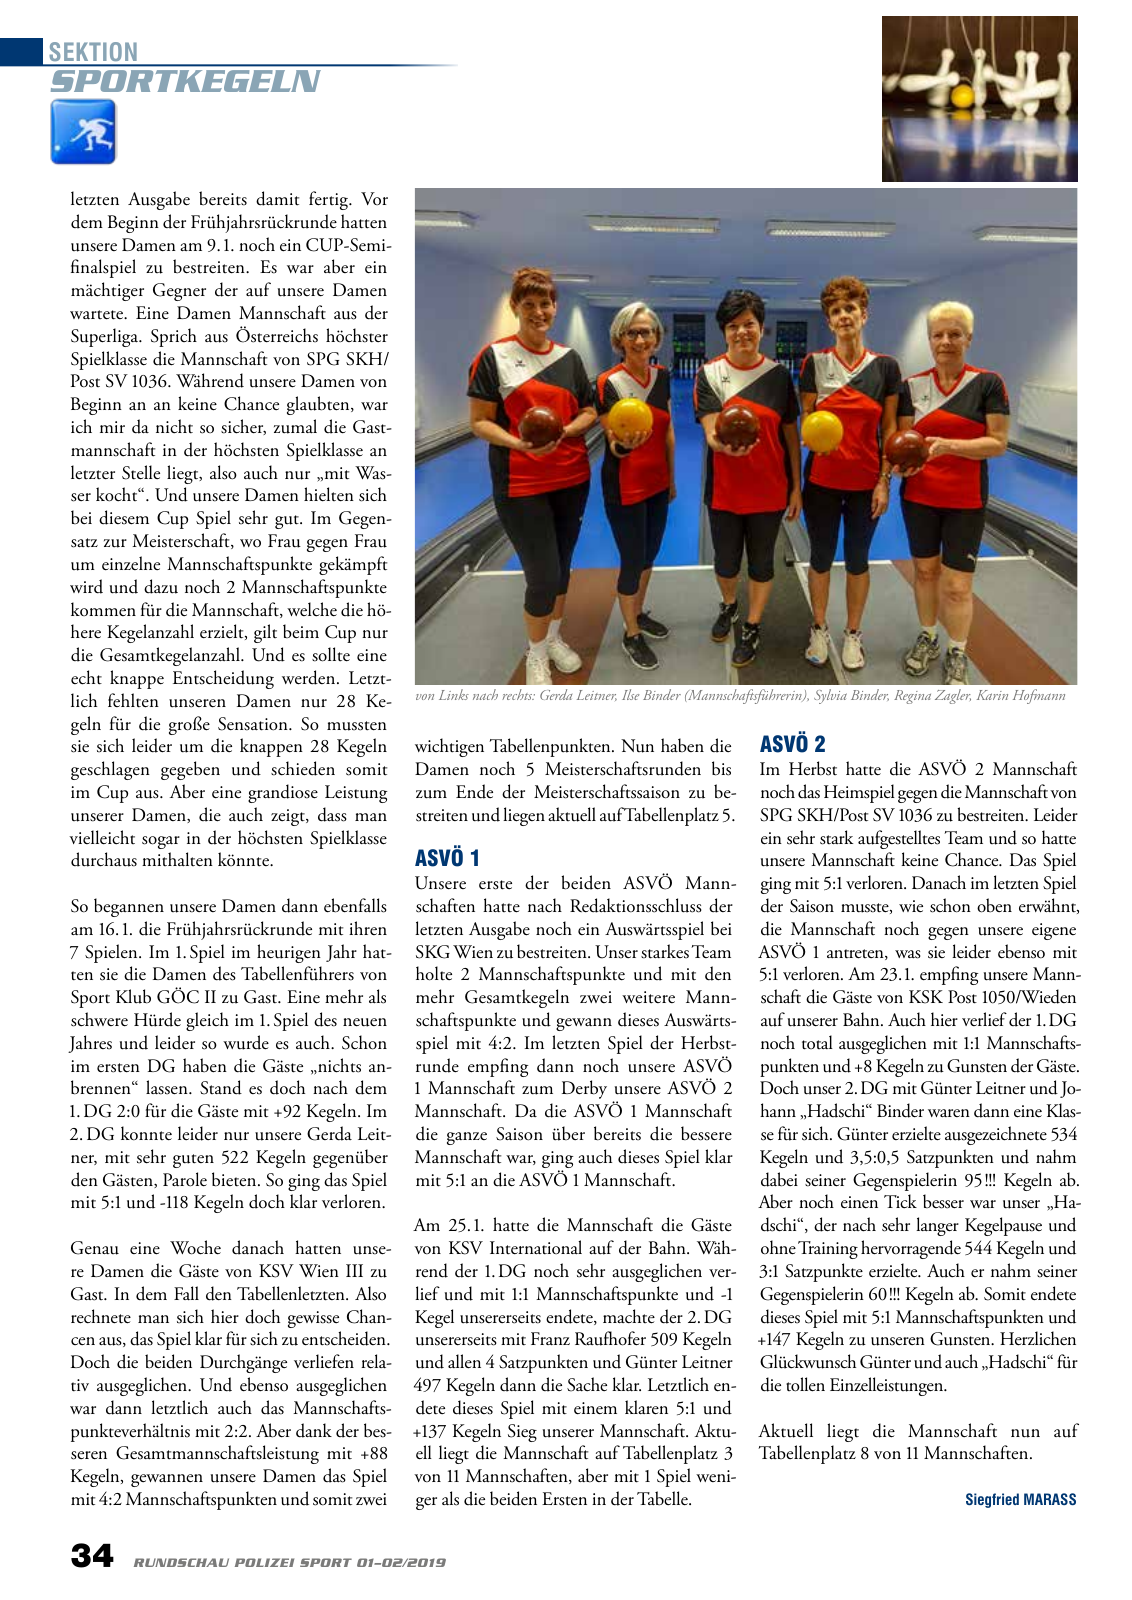 Vorschau Rundschau Polizei Sport 01-02/2019 Seite 34